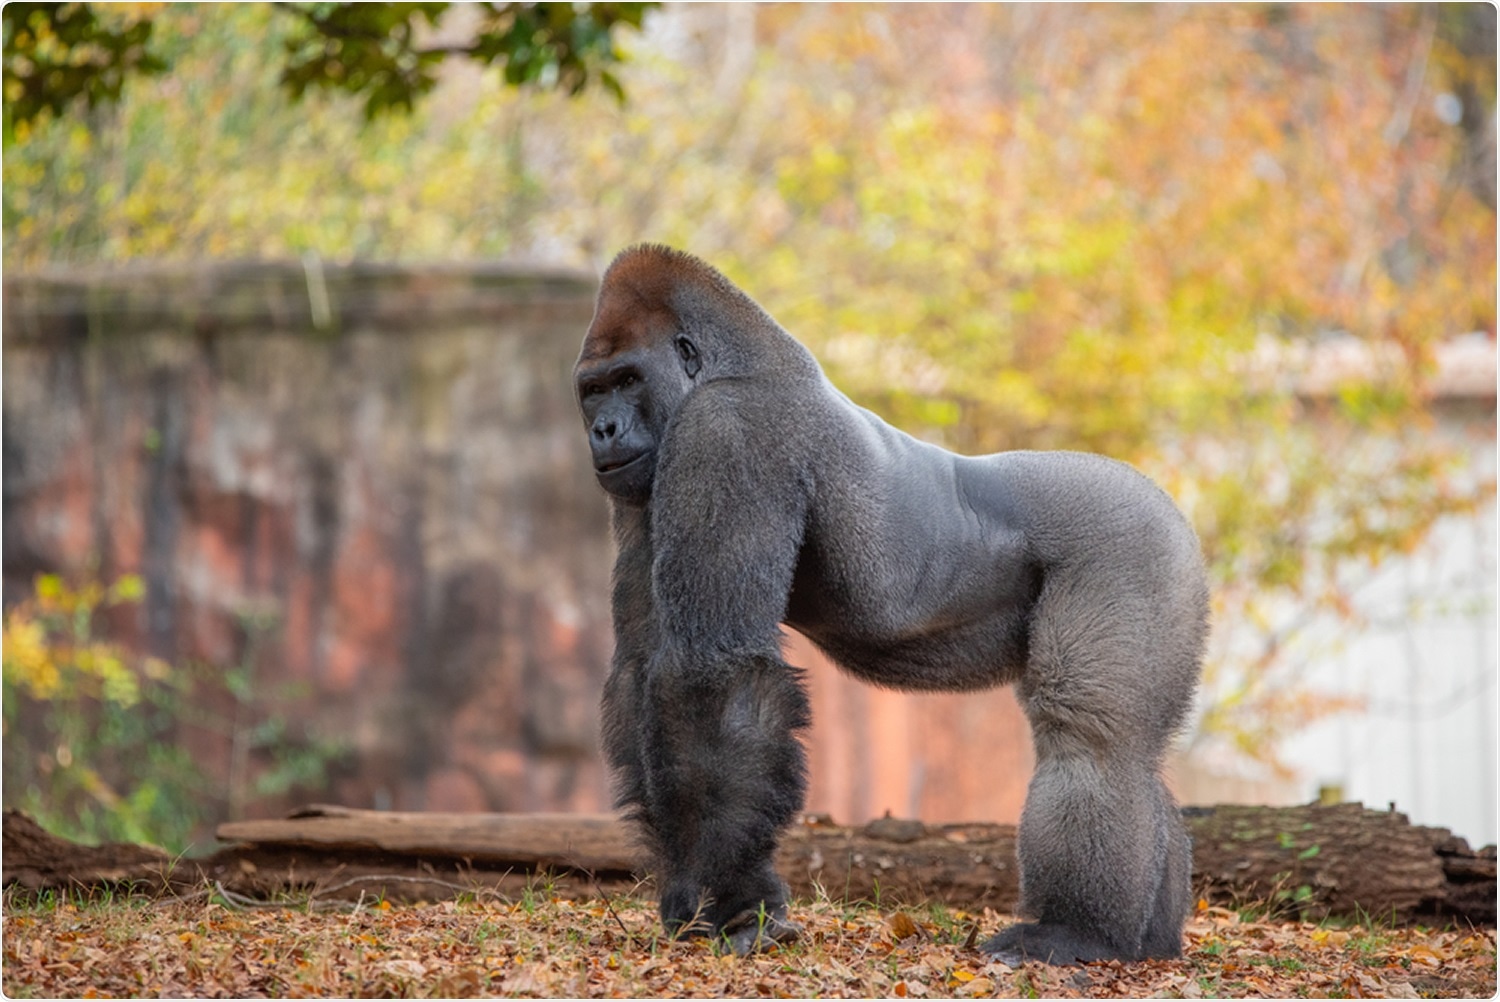 Gorilla in Atlanta zoo. Image Credit: Joan Voltaire / Shutterstock